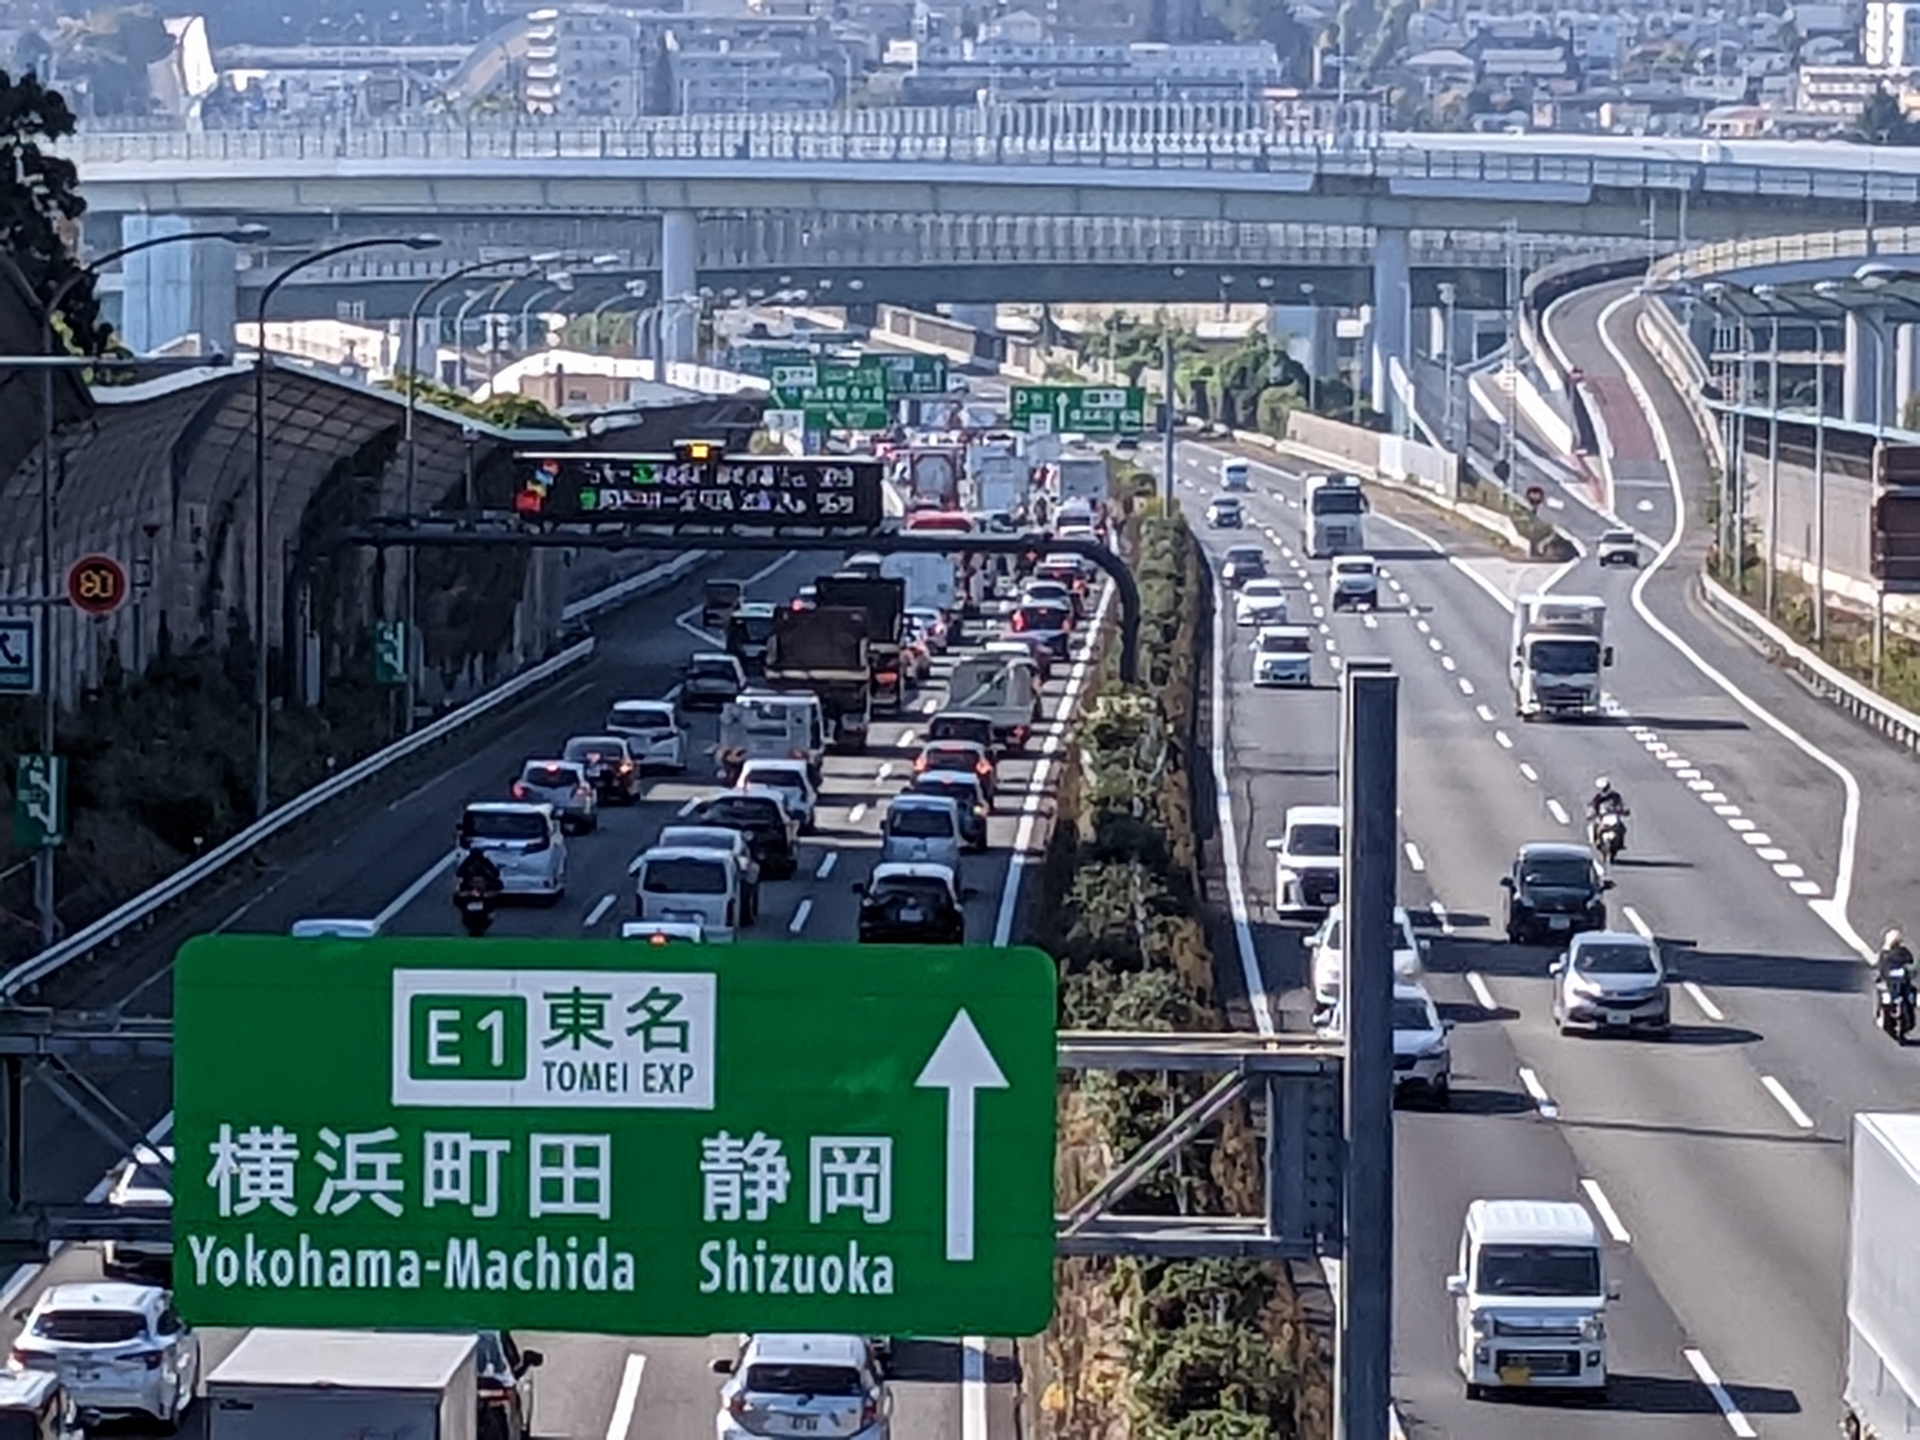 とうめい高速どうろくだり線の渋滞。場所は横浜・青葉インターチェンジ付近。